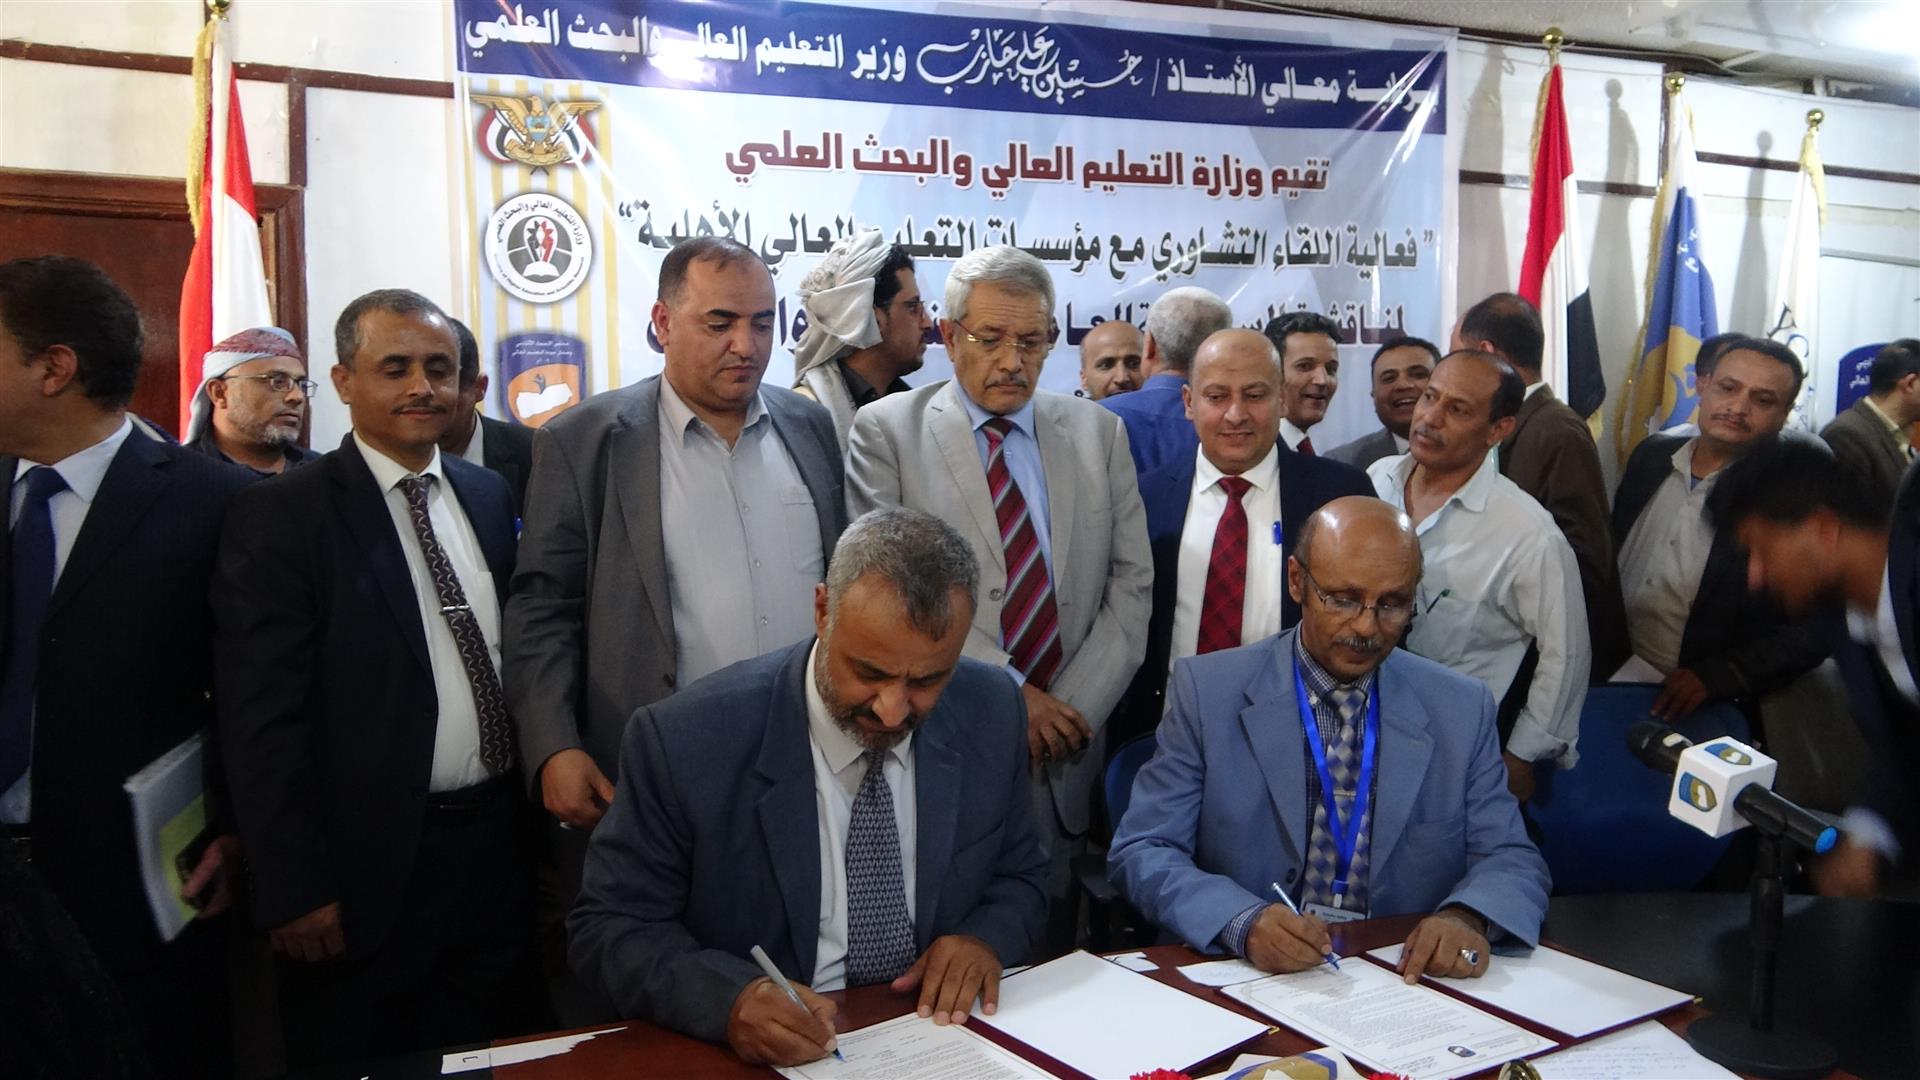 مجلس الاعتماد الأكاديمي يتسلّم طلب اعتماد برنامج الصيدلة بالجامعة اليمنية